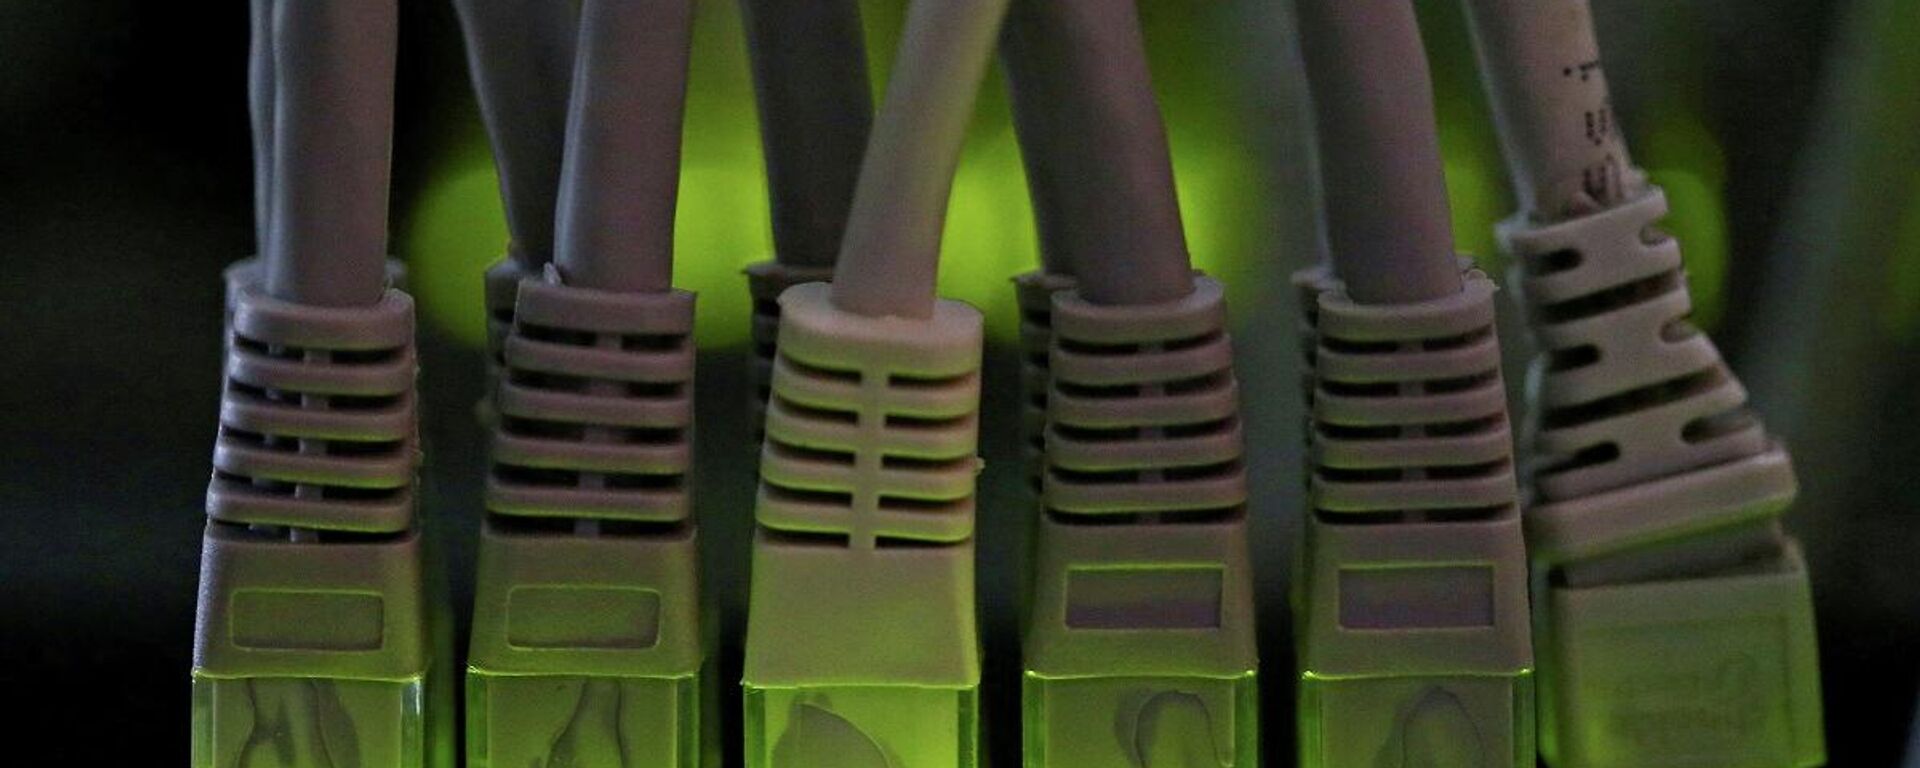 Los cables de la red LAN conectados a un servidor informático de minería de criptomonedas - Sputnik Mundo, 1920, 31.05.2021